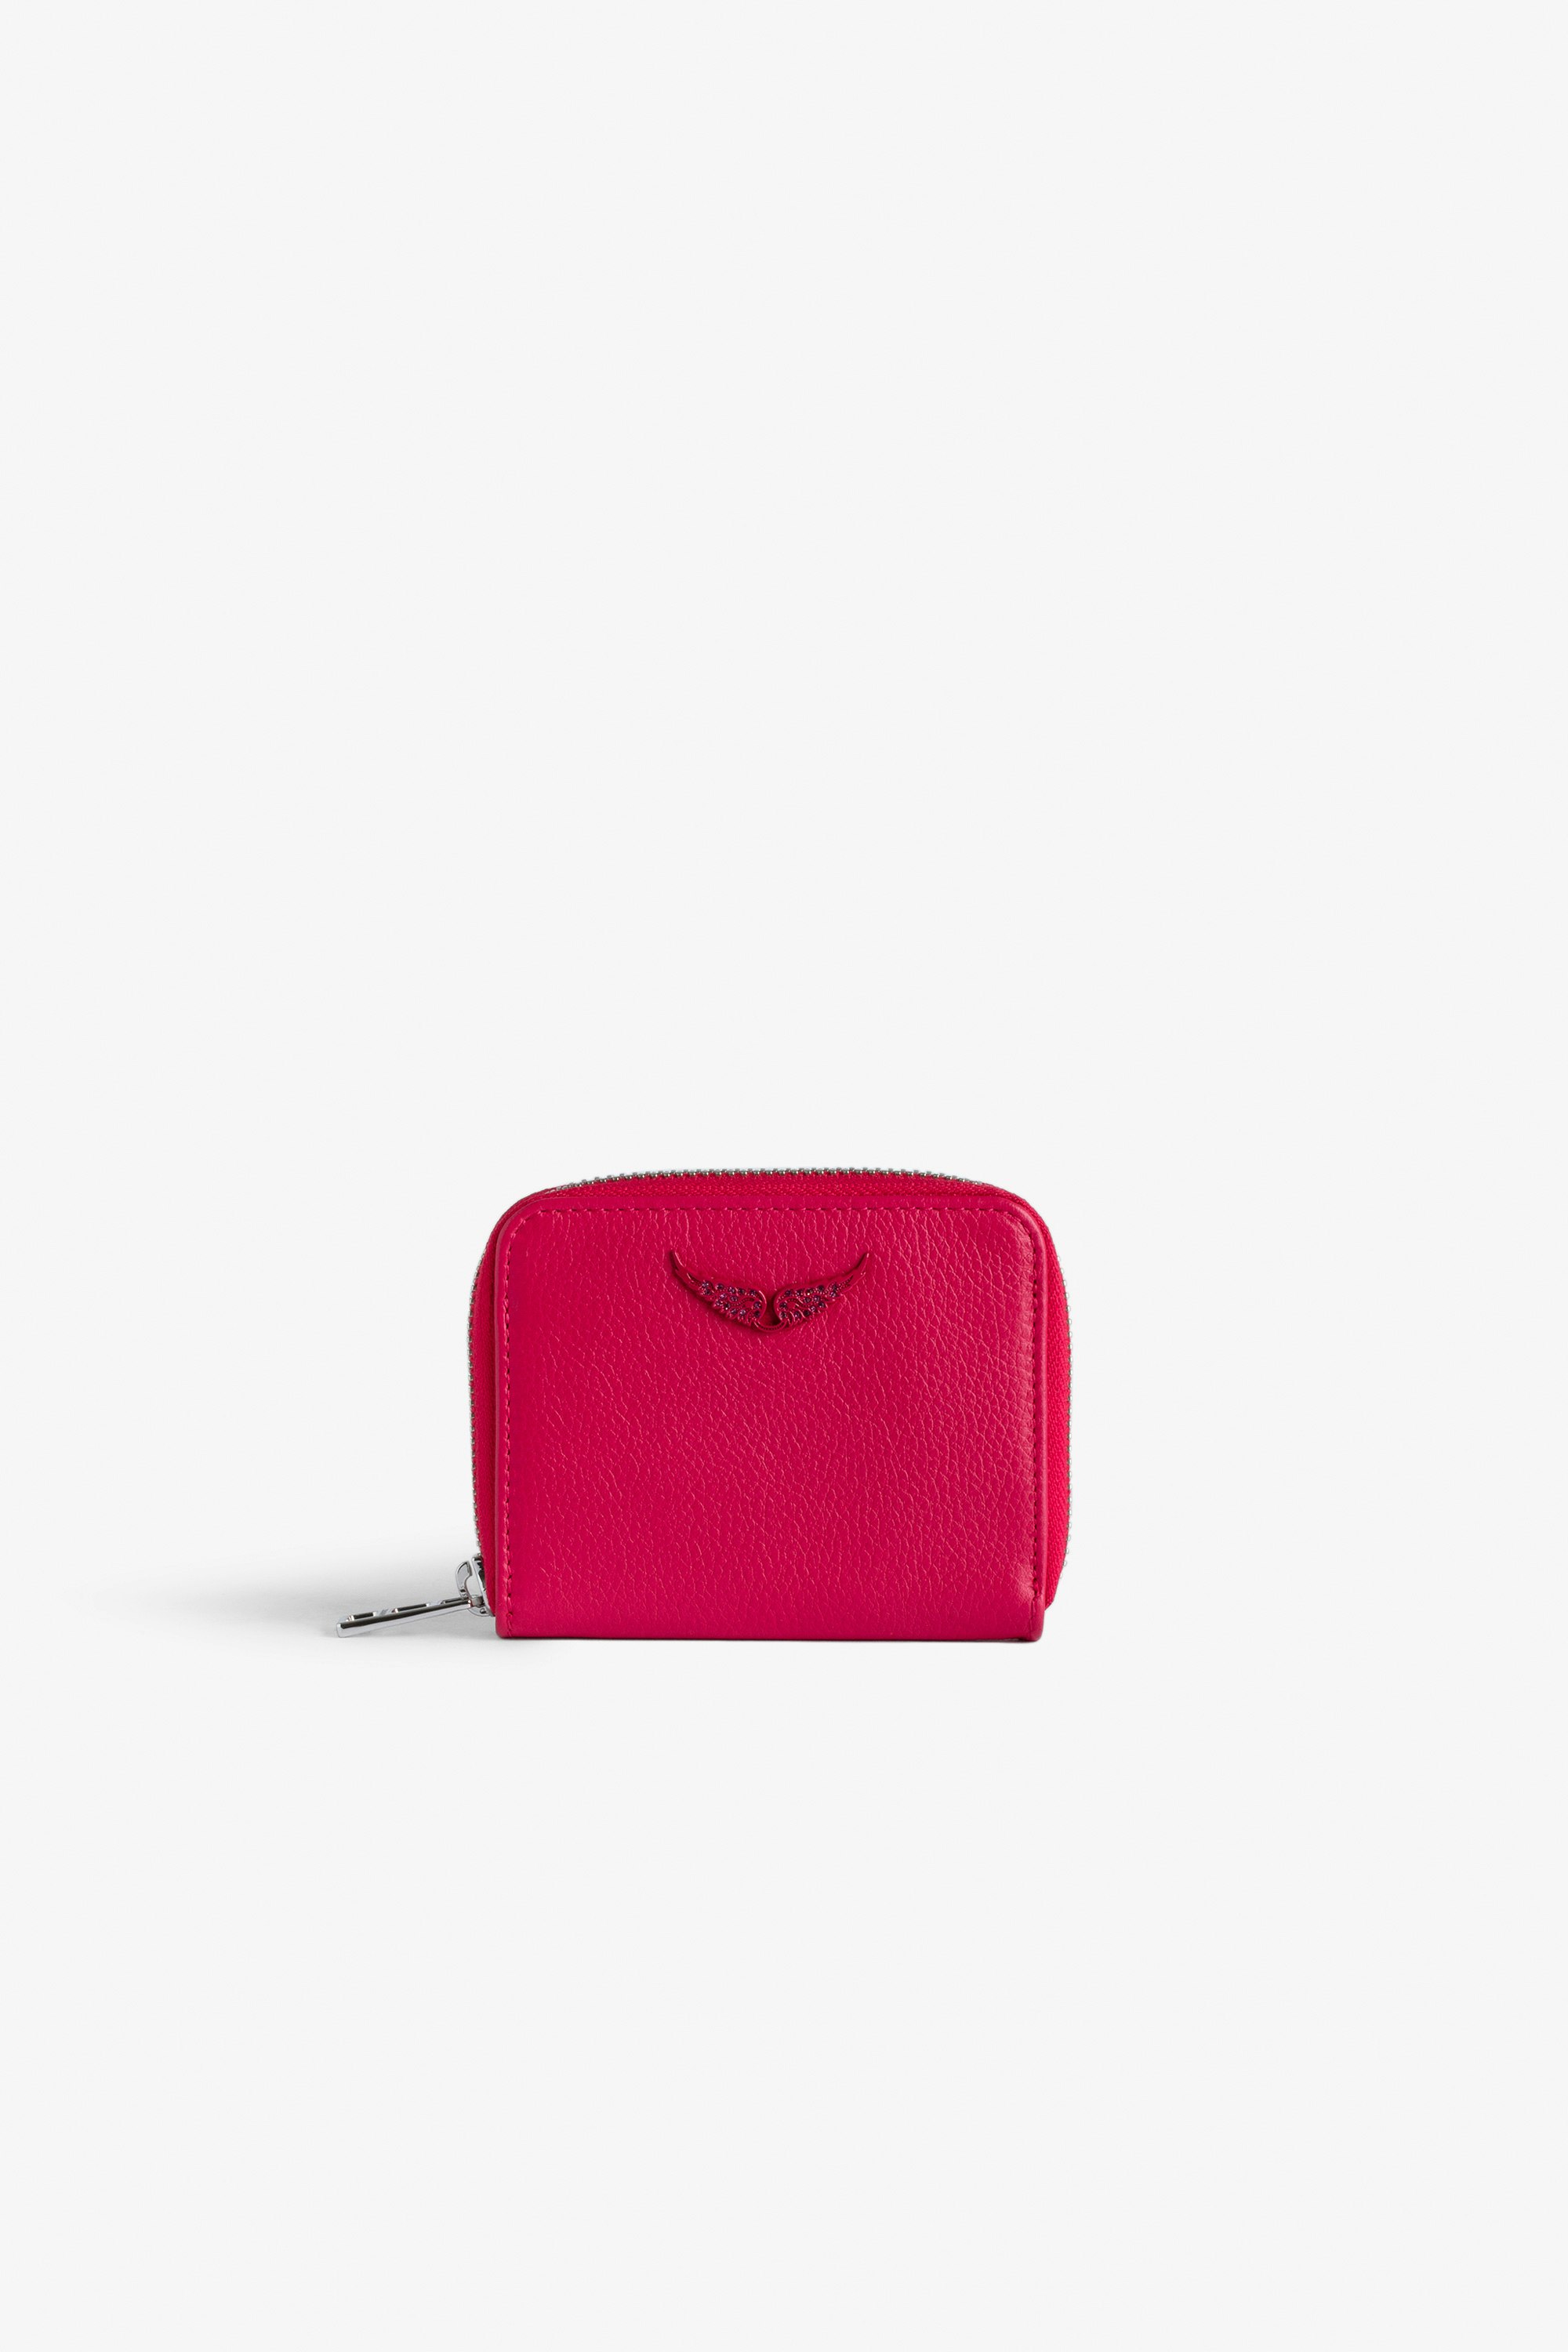 Porte-Monnaie Mini ZV - Portefeuille en cuir grainé rose à charm ailes en strass.